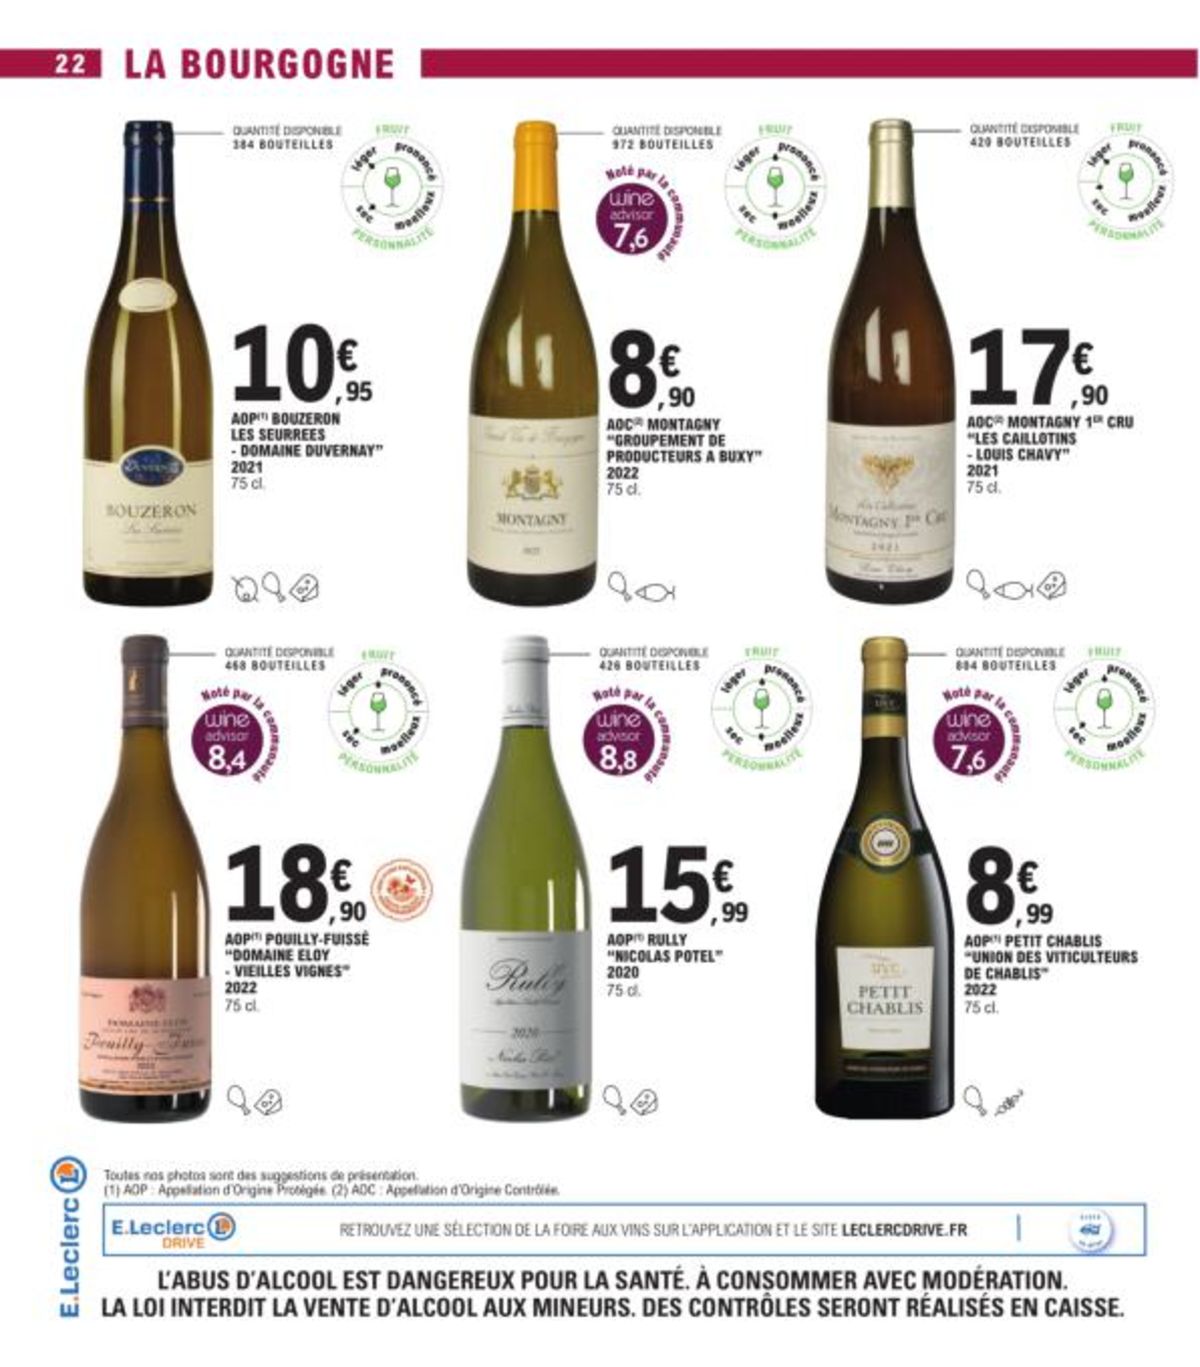 Catalogue Foire Aux Vins - Mixte, page 01481